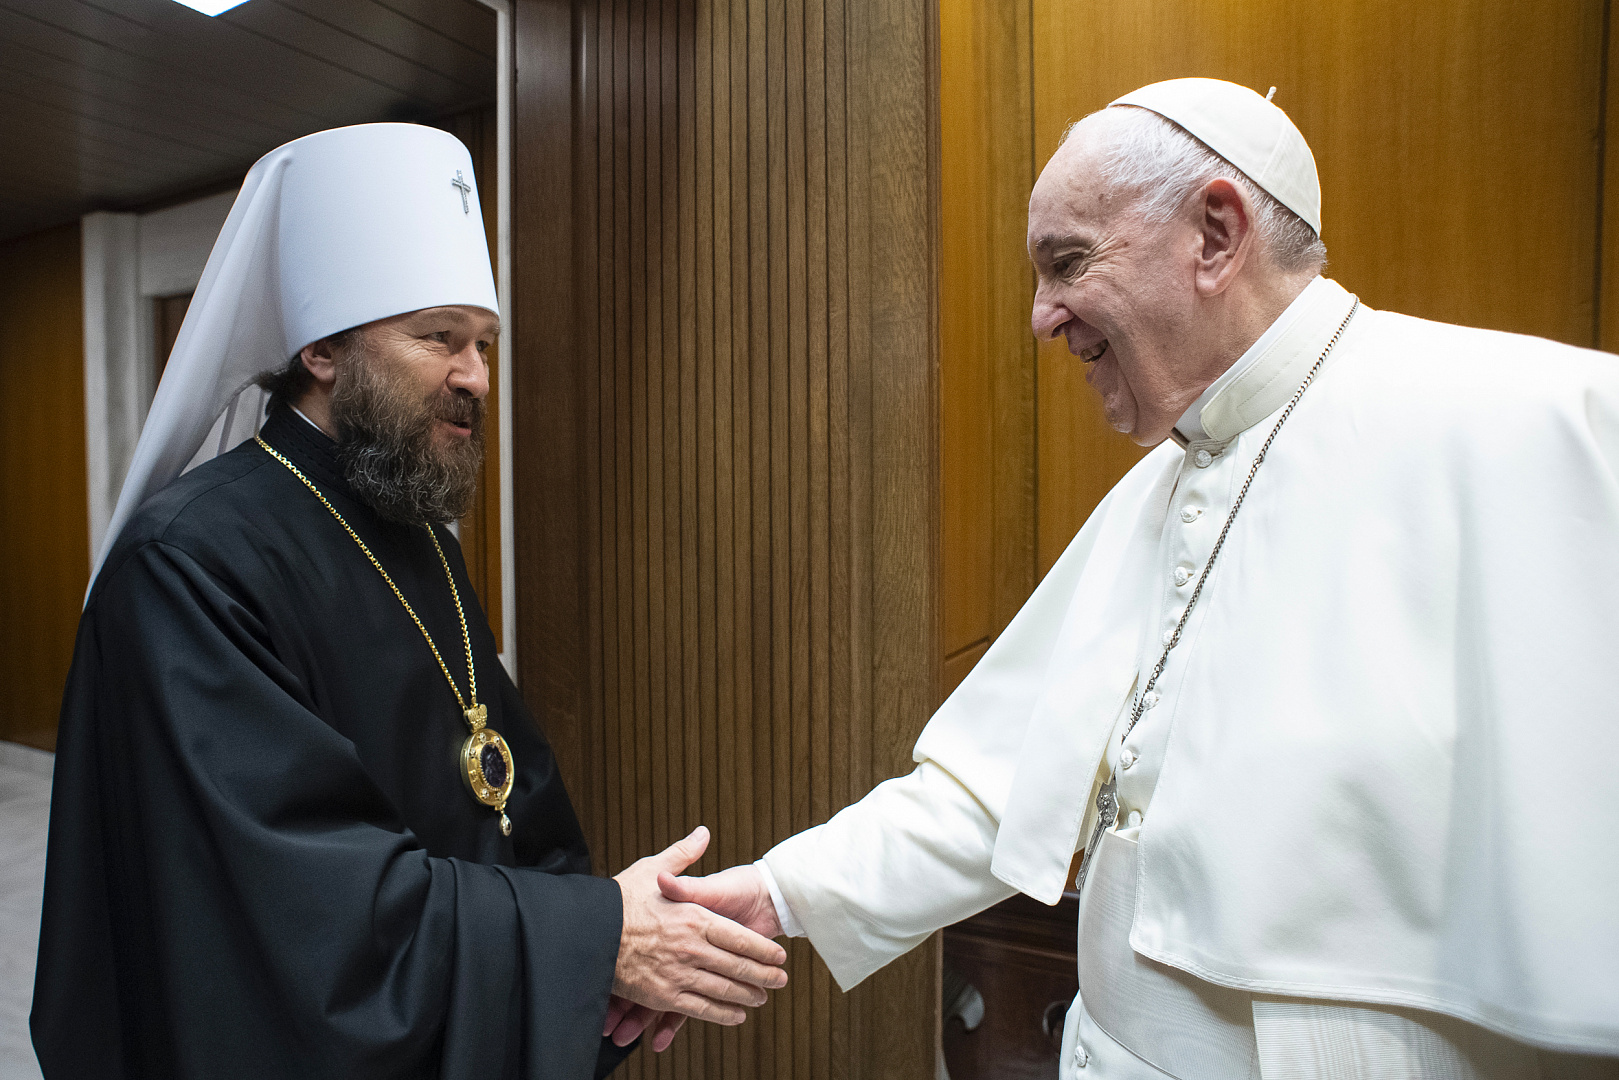 Иларион встретился с Папой Франциском, дал интервью Vatican News